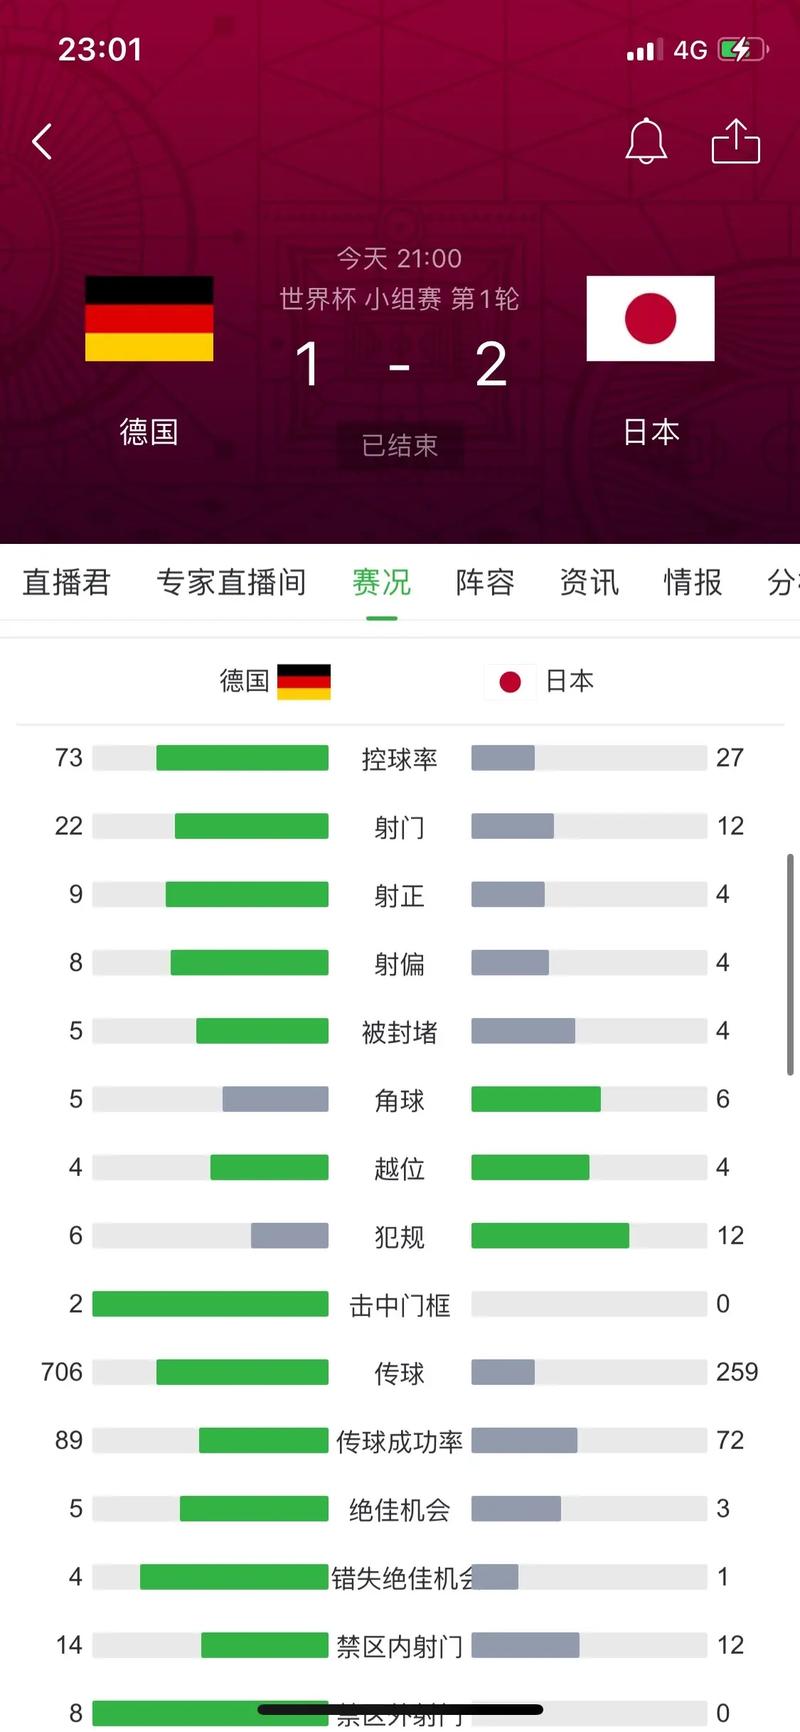 德国vs日本点球数据的相关图片